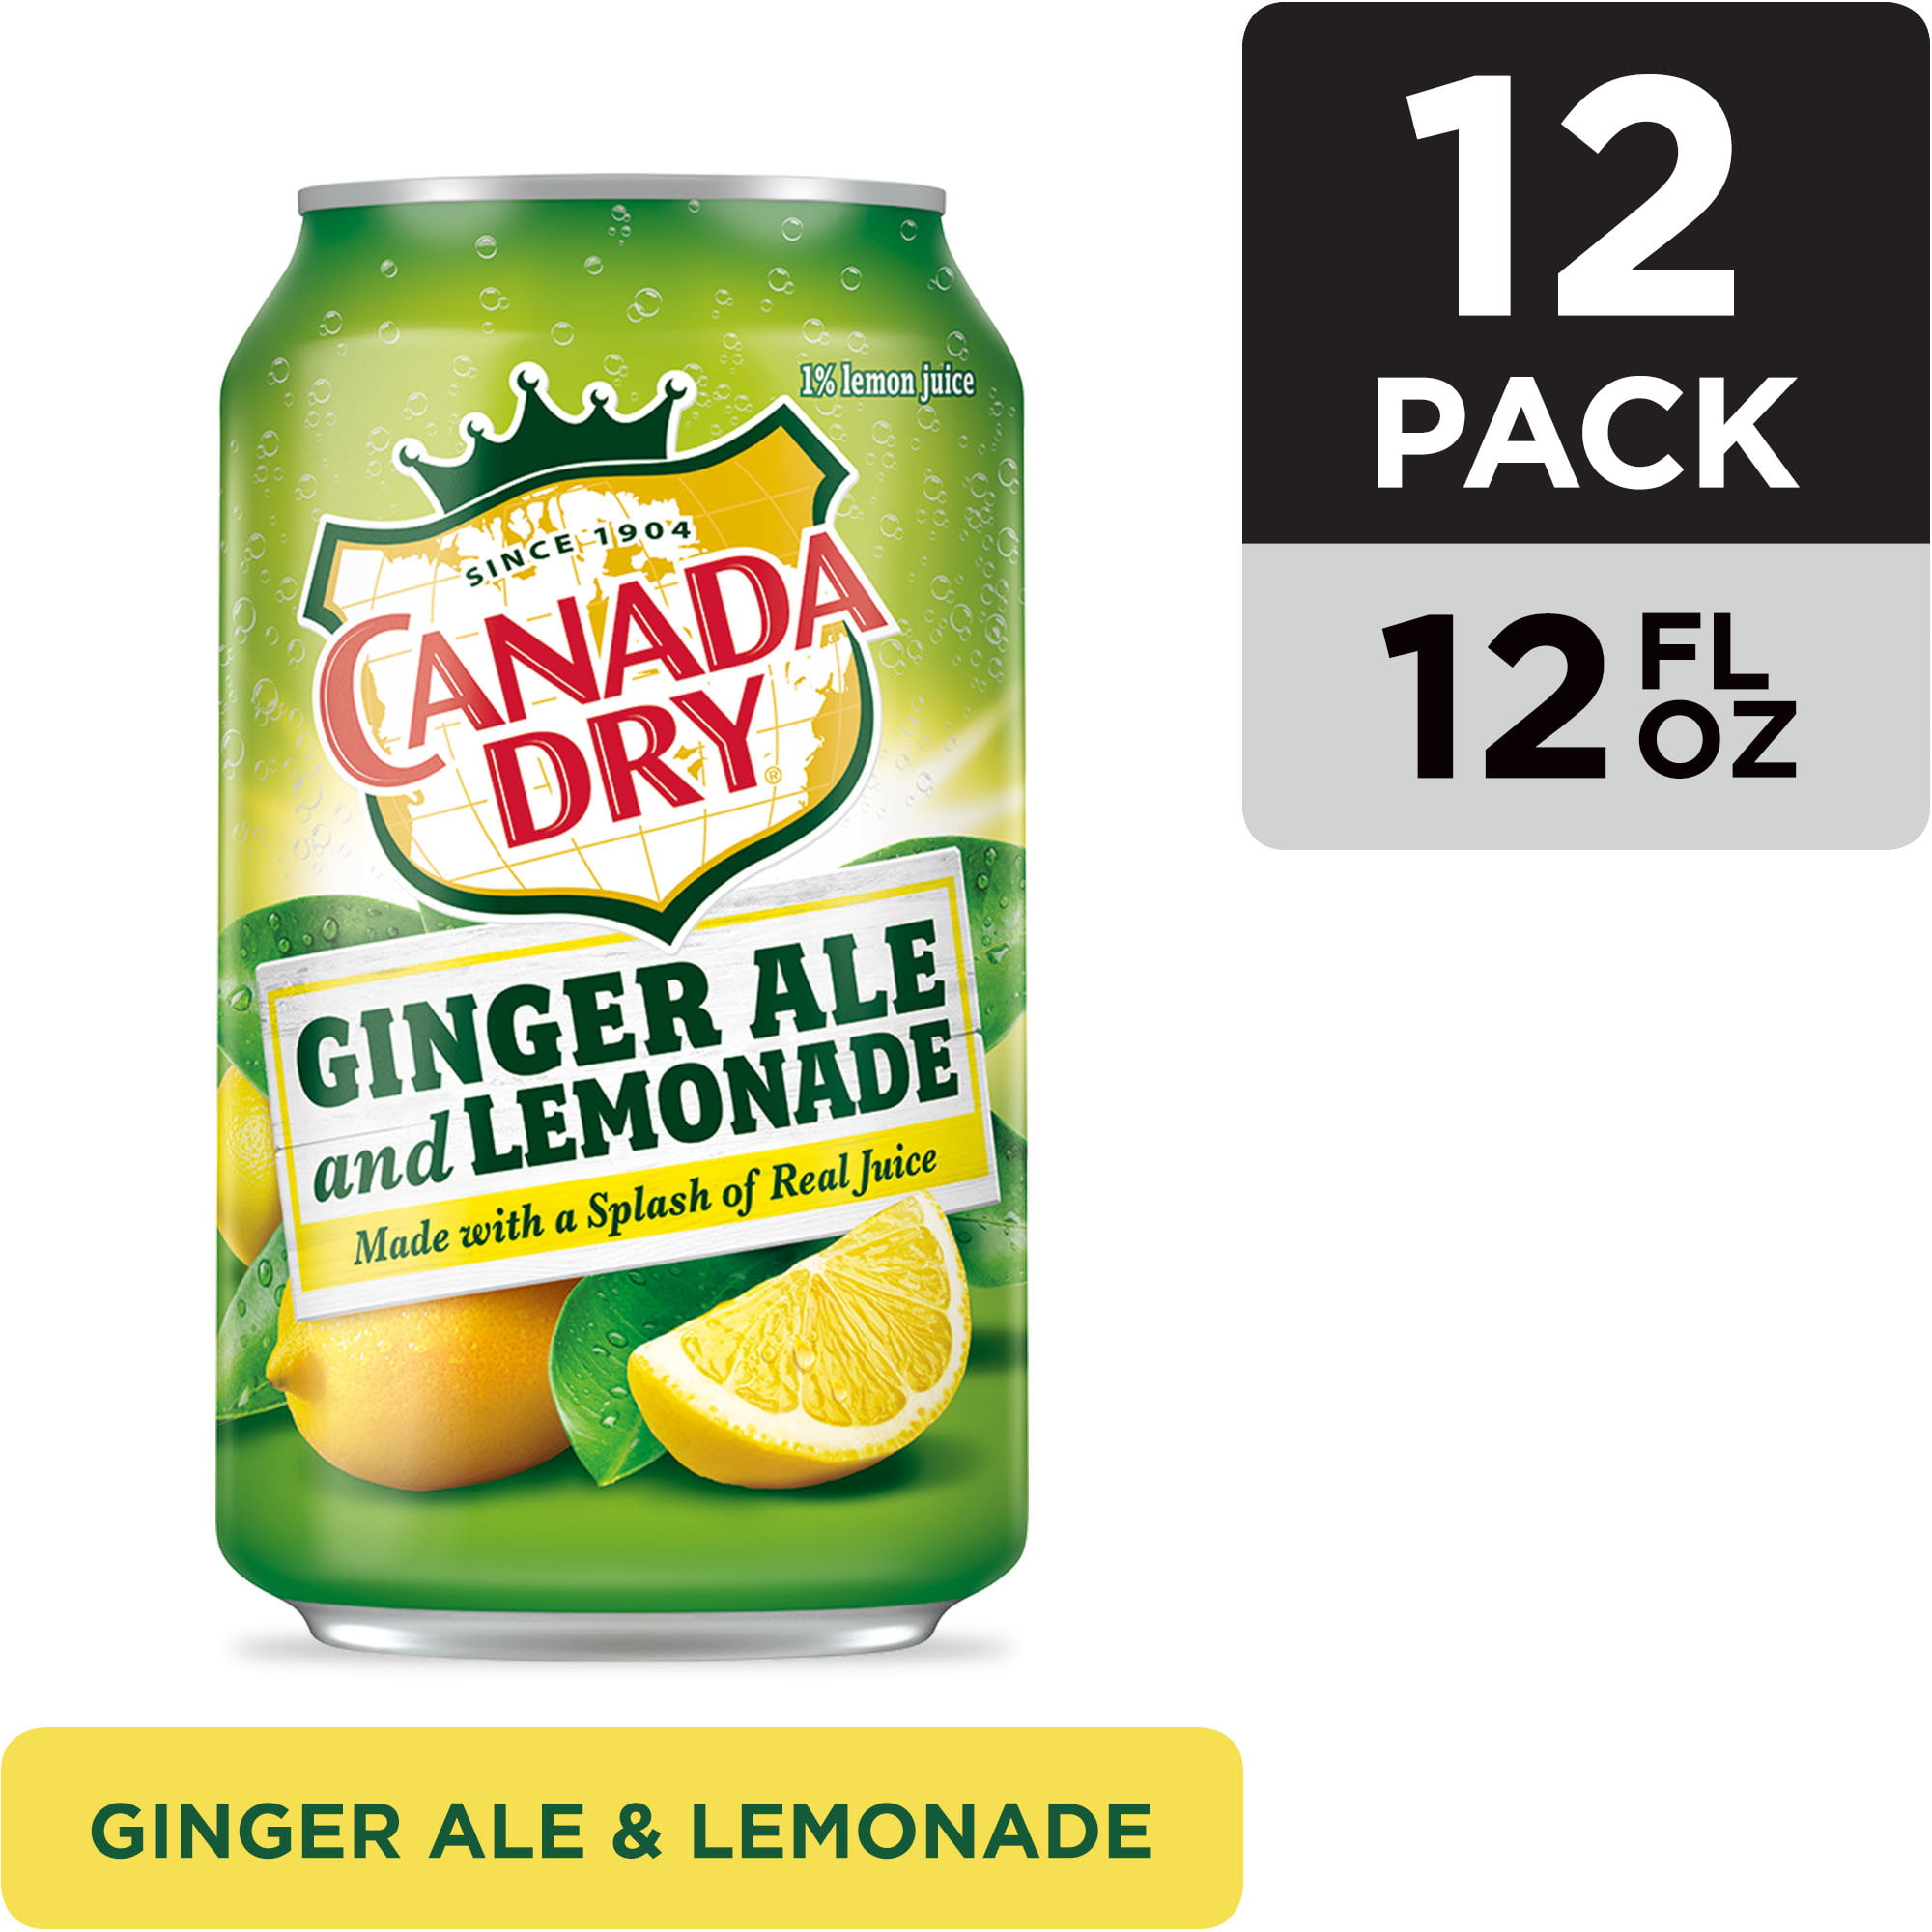 Canada Dry Ginger Ale And Lemonade Expiration Date Canada Dry Ginger Ale And Lemonade 12 Fl Oz Cans 12 Pack Walmart Com Walmart Com